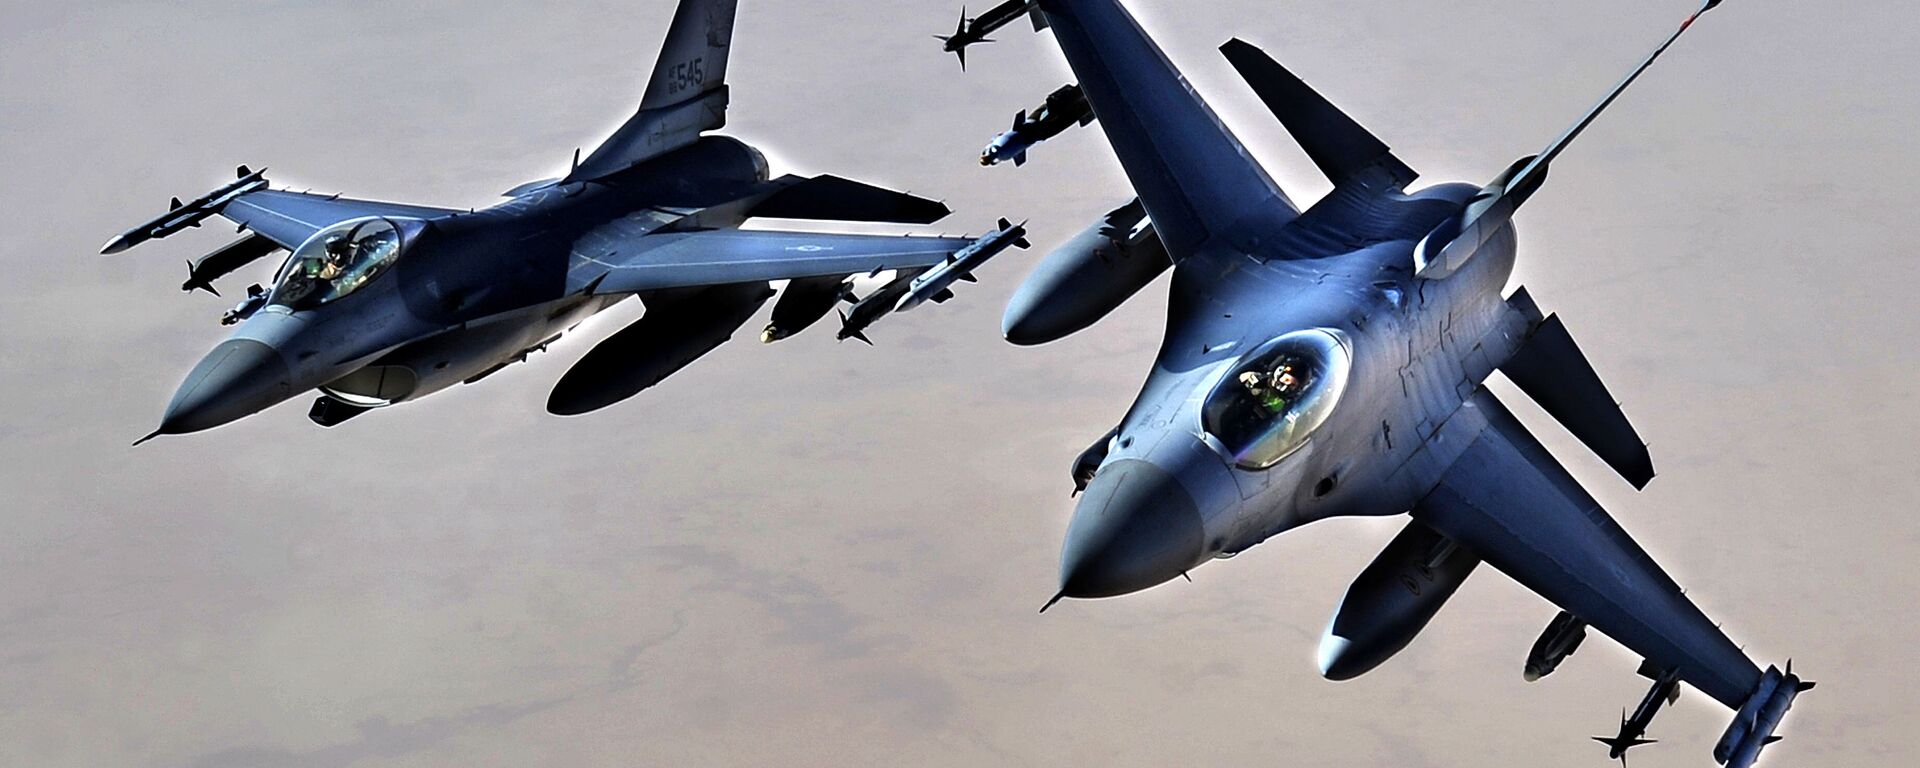 Chiến đấu cơ F-16 của Không lực Hoa Kỳ trên lãnh thổ Iraq. - Sputnik Việt Nam, 1920, 06.05.2022